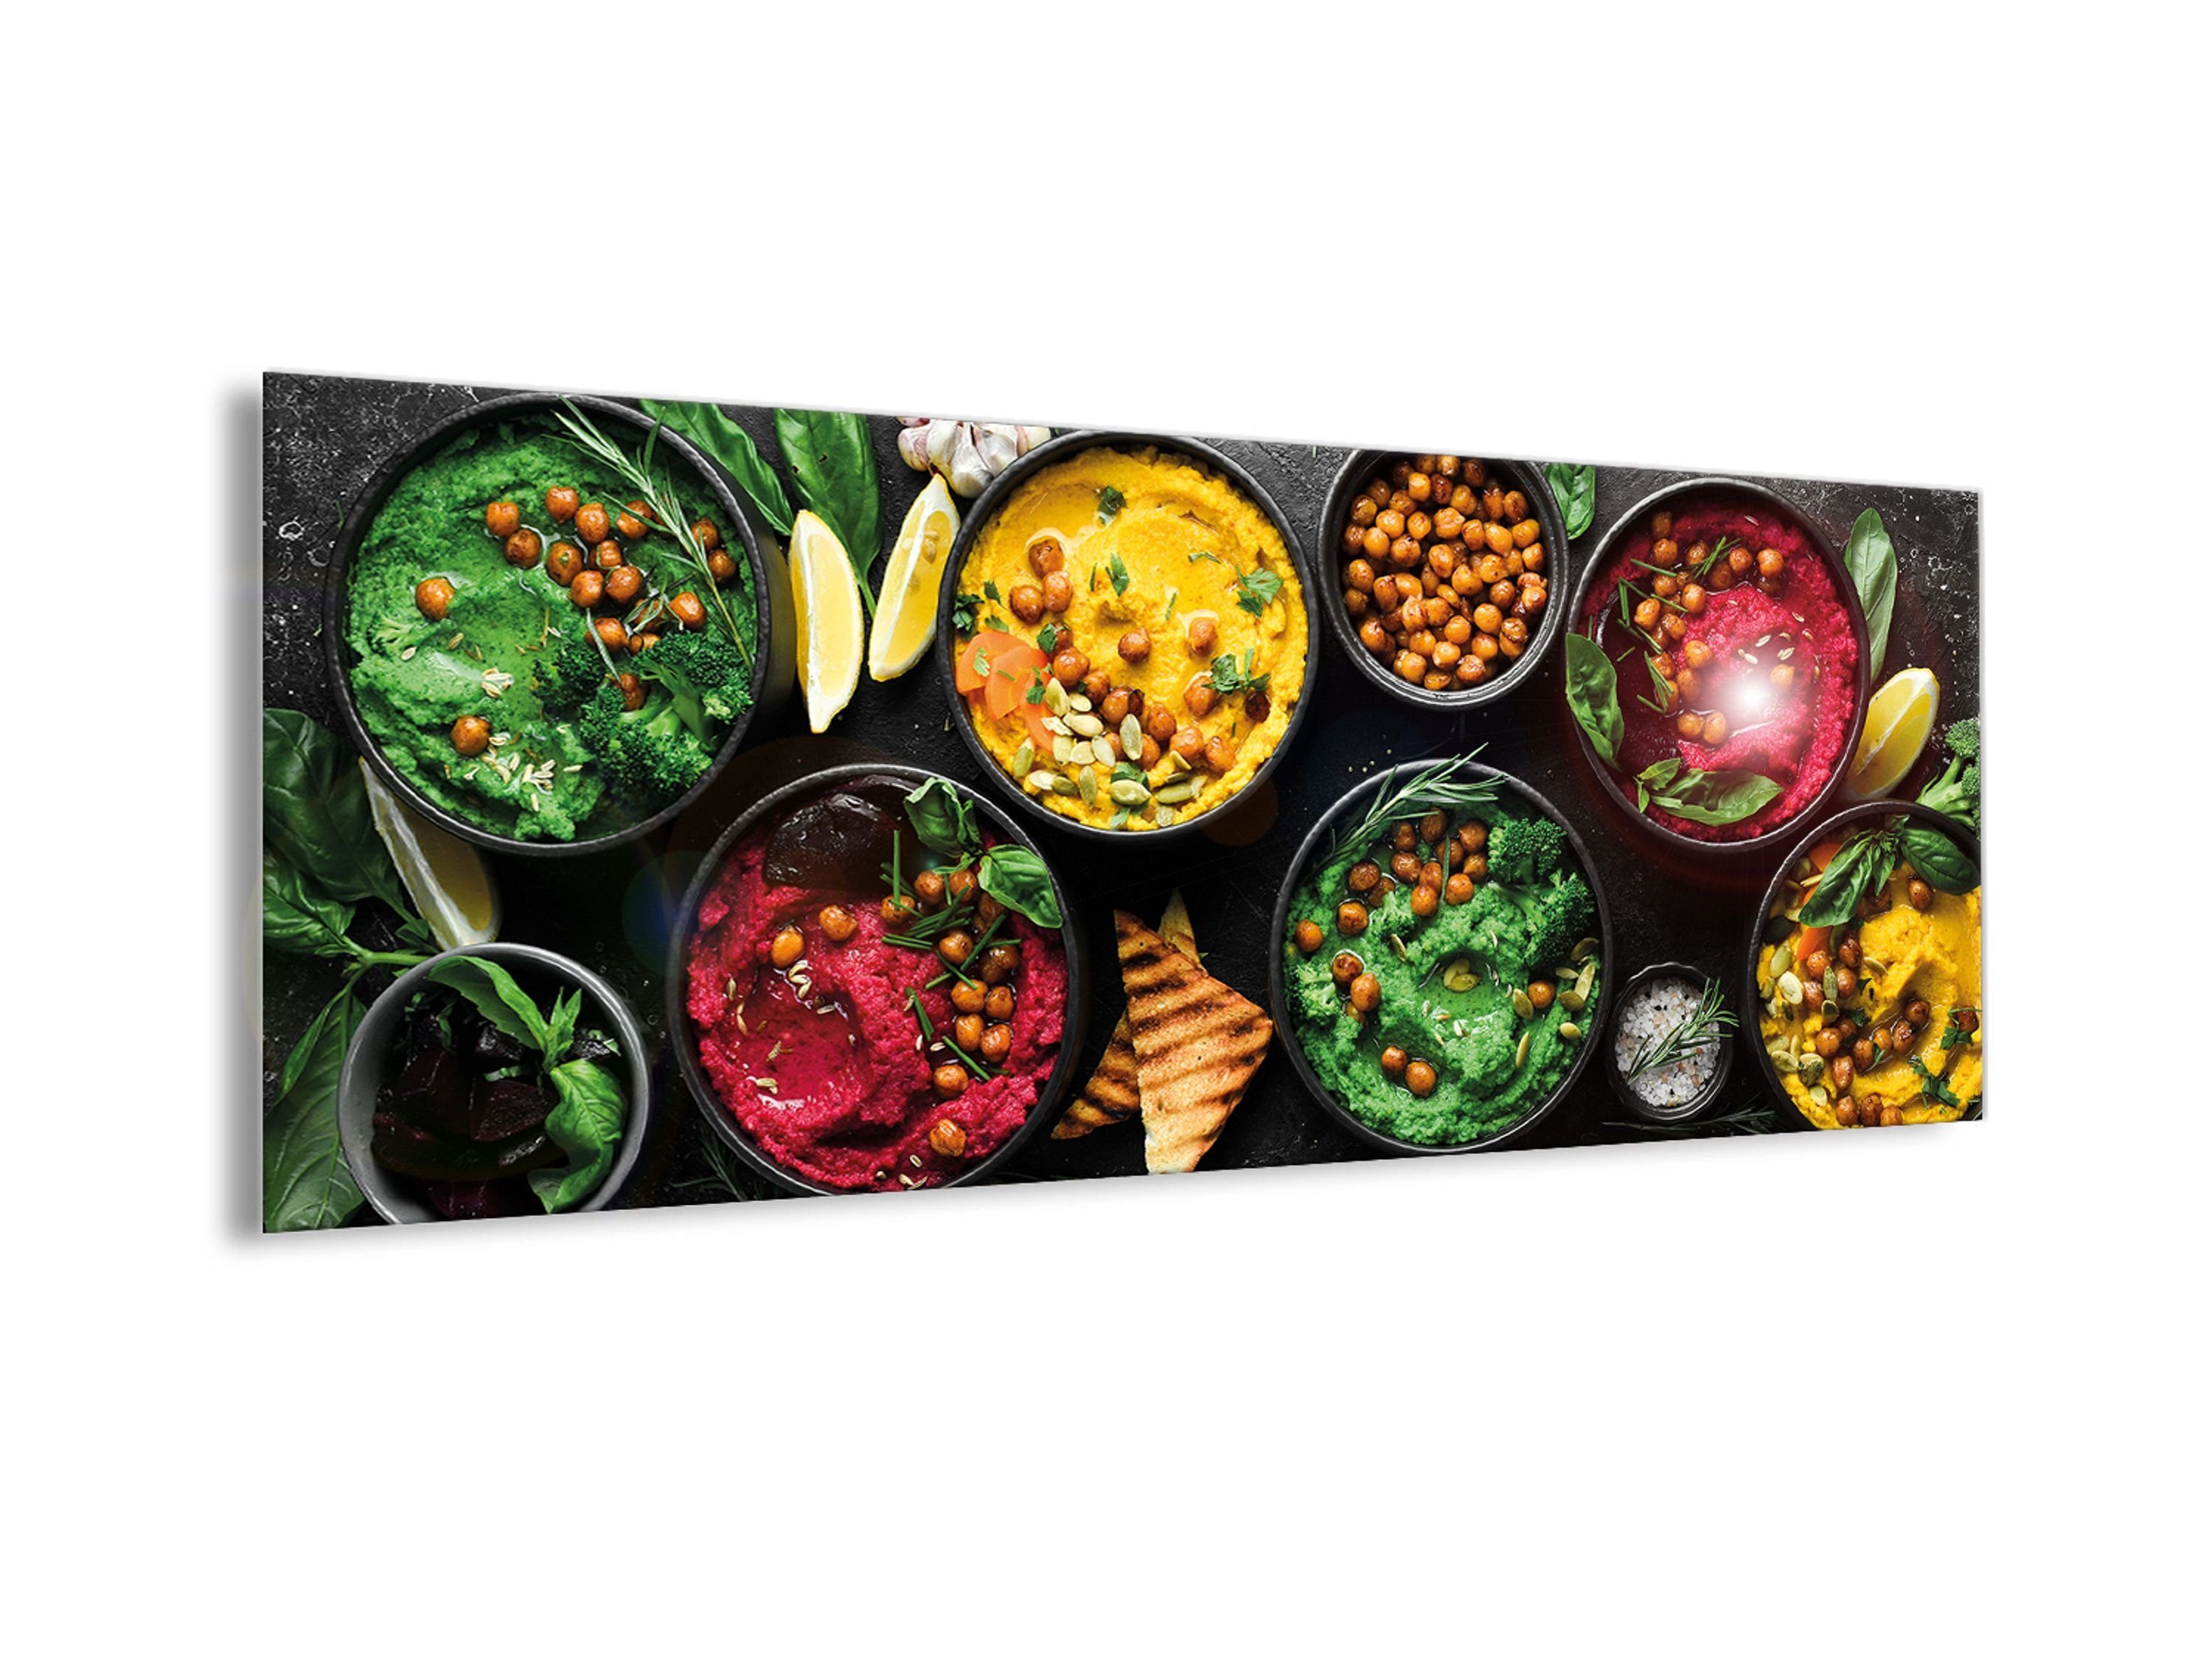 artissimo Glasbild Glasbild bunt Küchenbild Küche Essen Essen Speisen Orientalische Trinken: Glas Bild und Bowls, 80x30cm aus